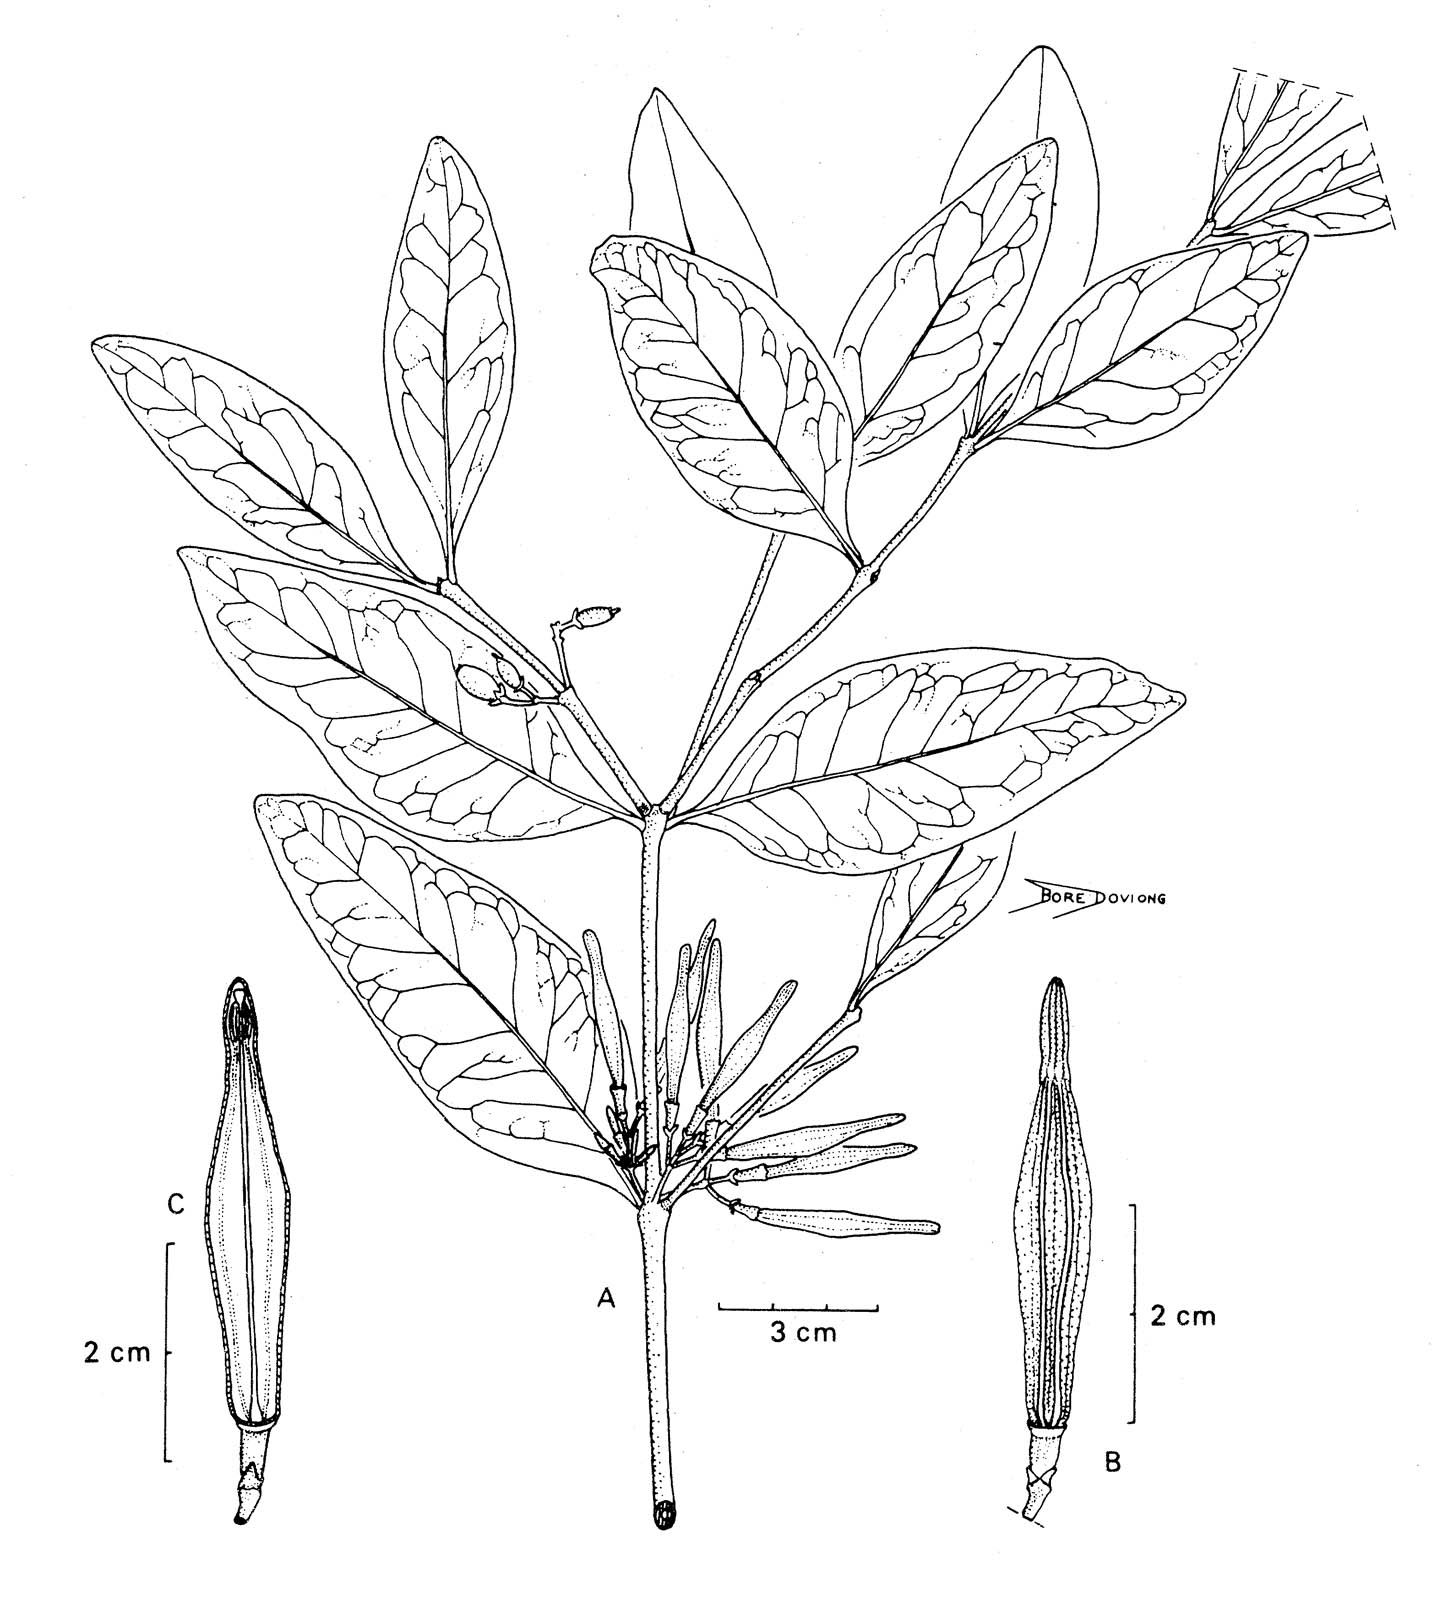 Amylotheca dictyophleba